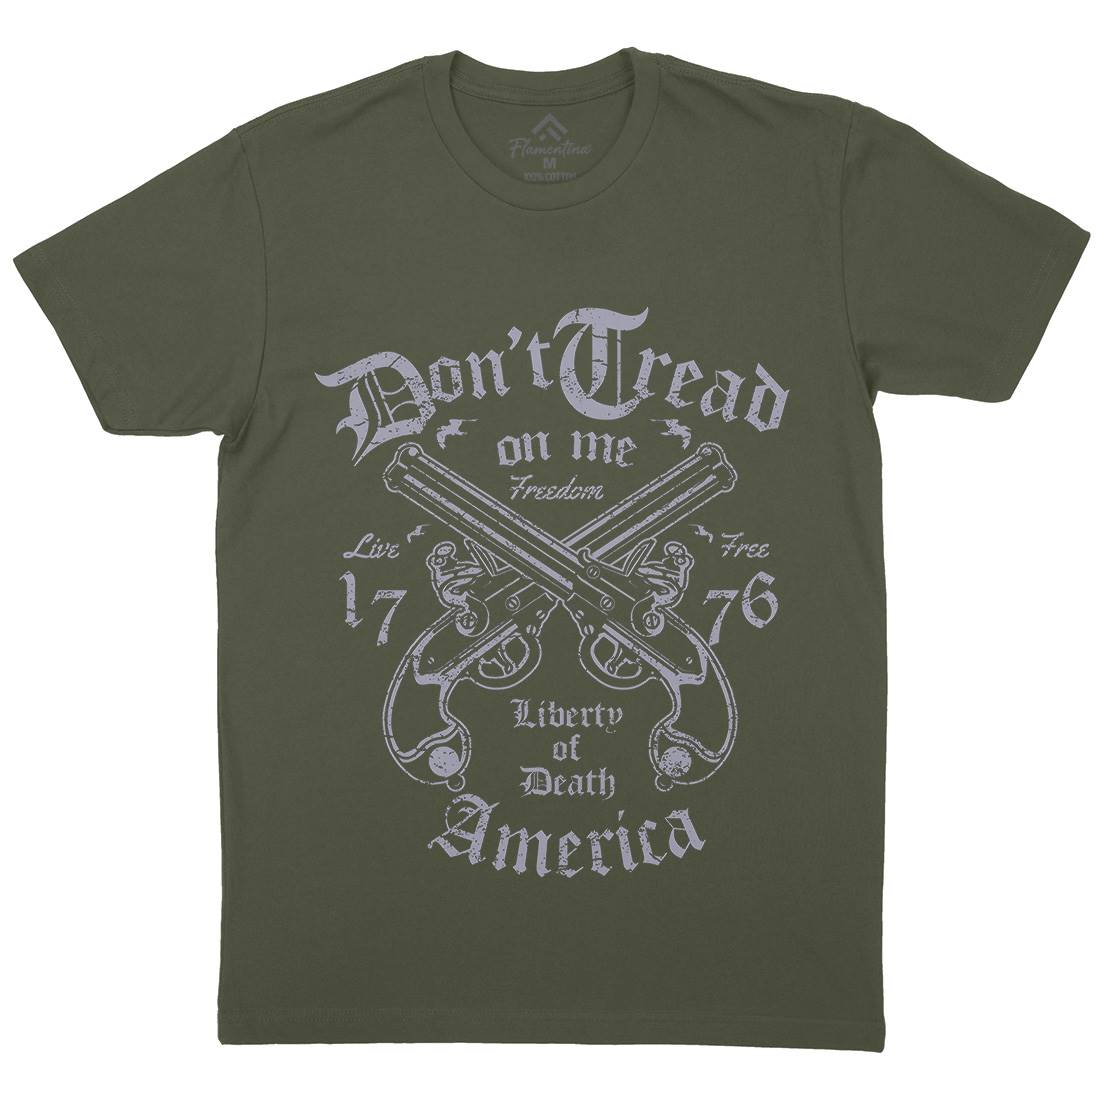 Liberty Of Death Mens Crew Neck T-Shirt American A084